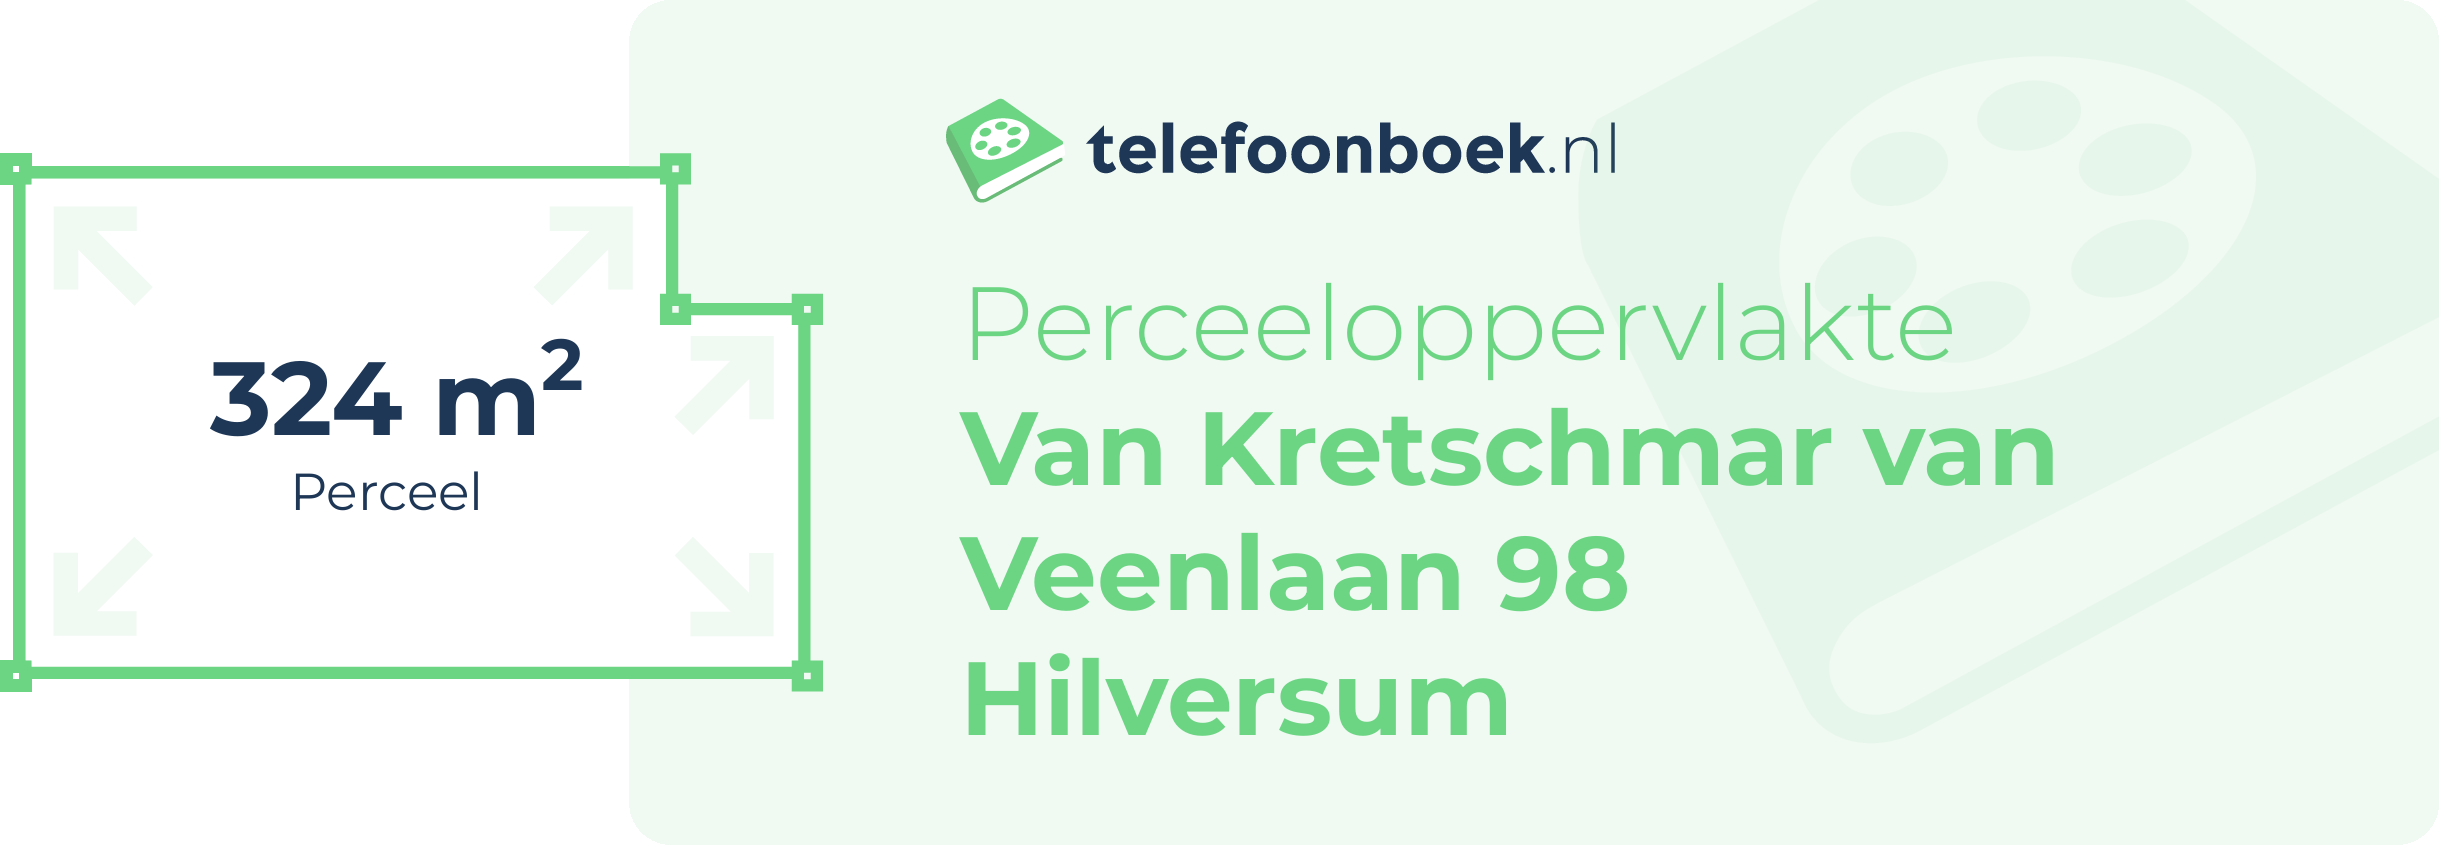 Perceeloppervlakte Van Kretschmar Van Veenlaan 98 Hilversum